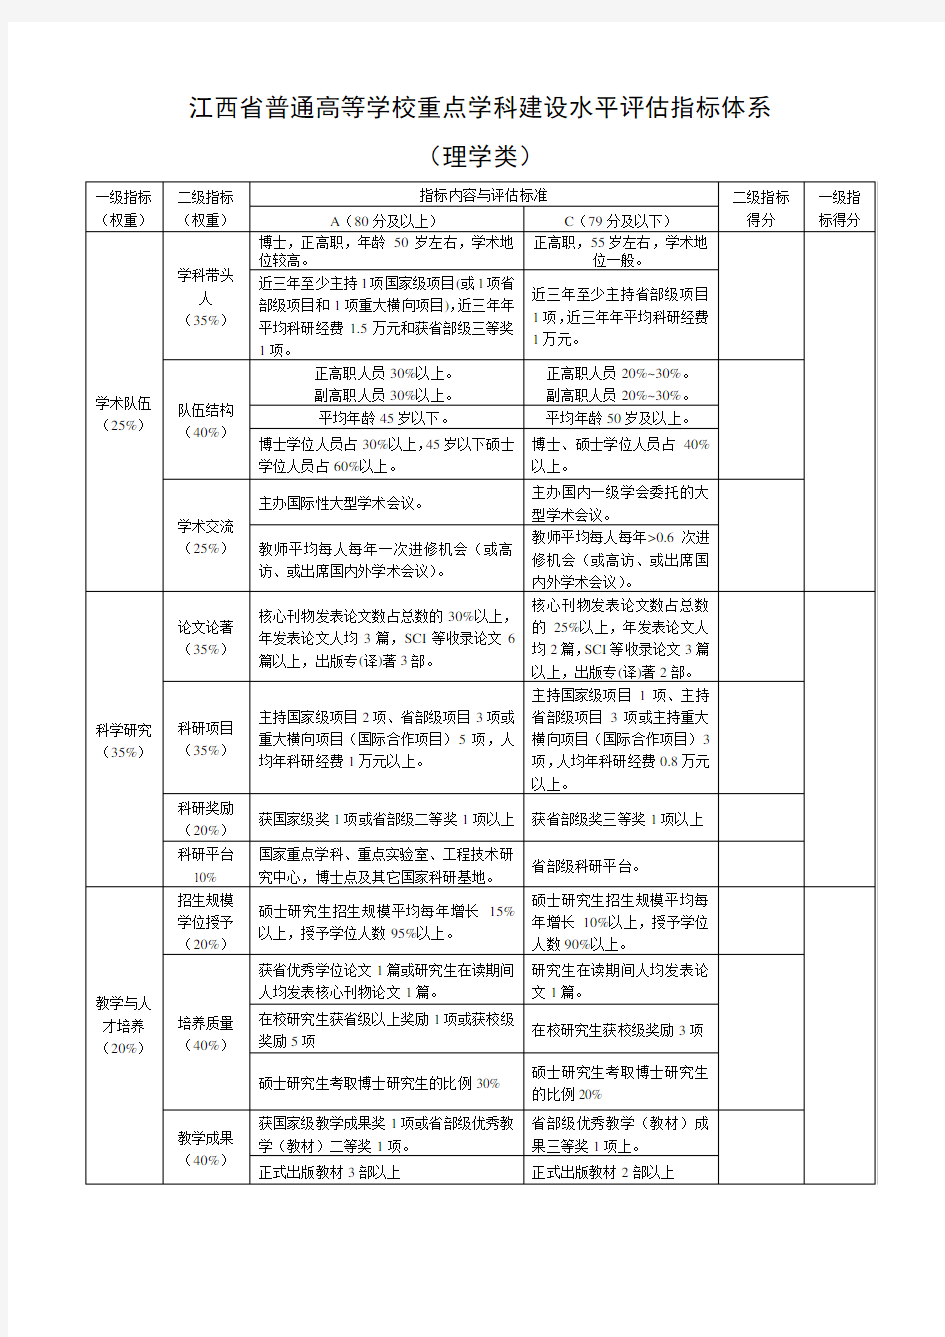 江西省普通高等学校重点学科建设水平评估指标体系